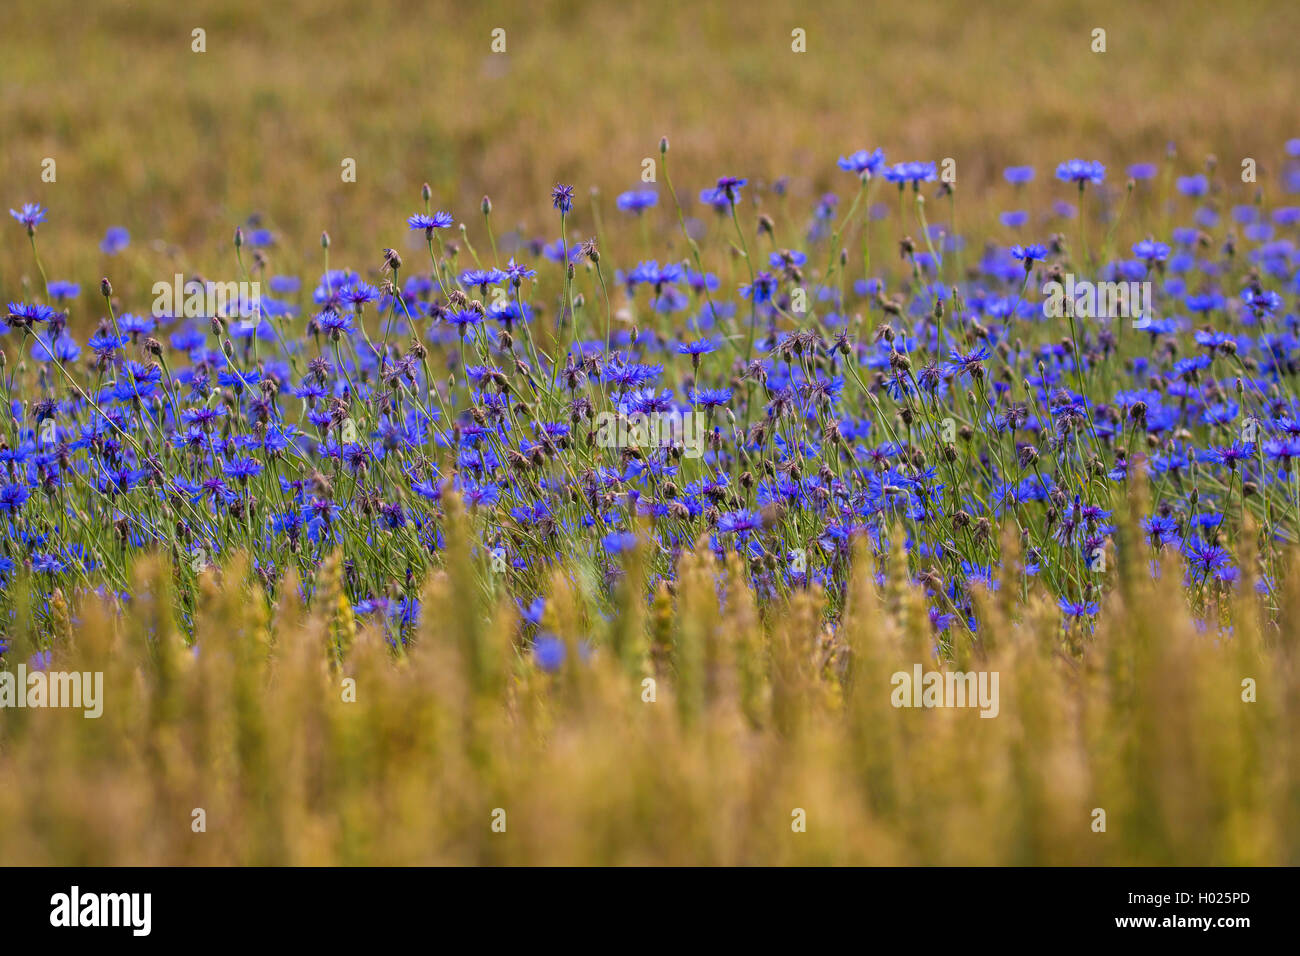 Bouton de baccalauréat, bleue, le bleuet (Centaurea cyanus), à forte densité de fleurs de bleuets dans un champ de blé, de l'Allemagne, la Bavière Banque D'Images